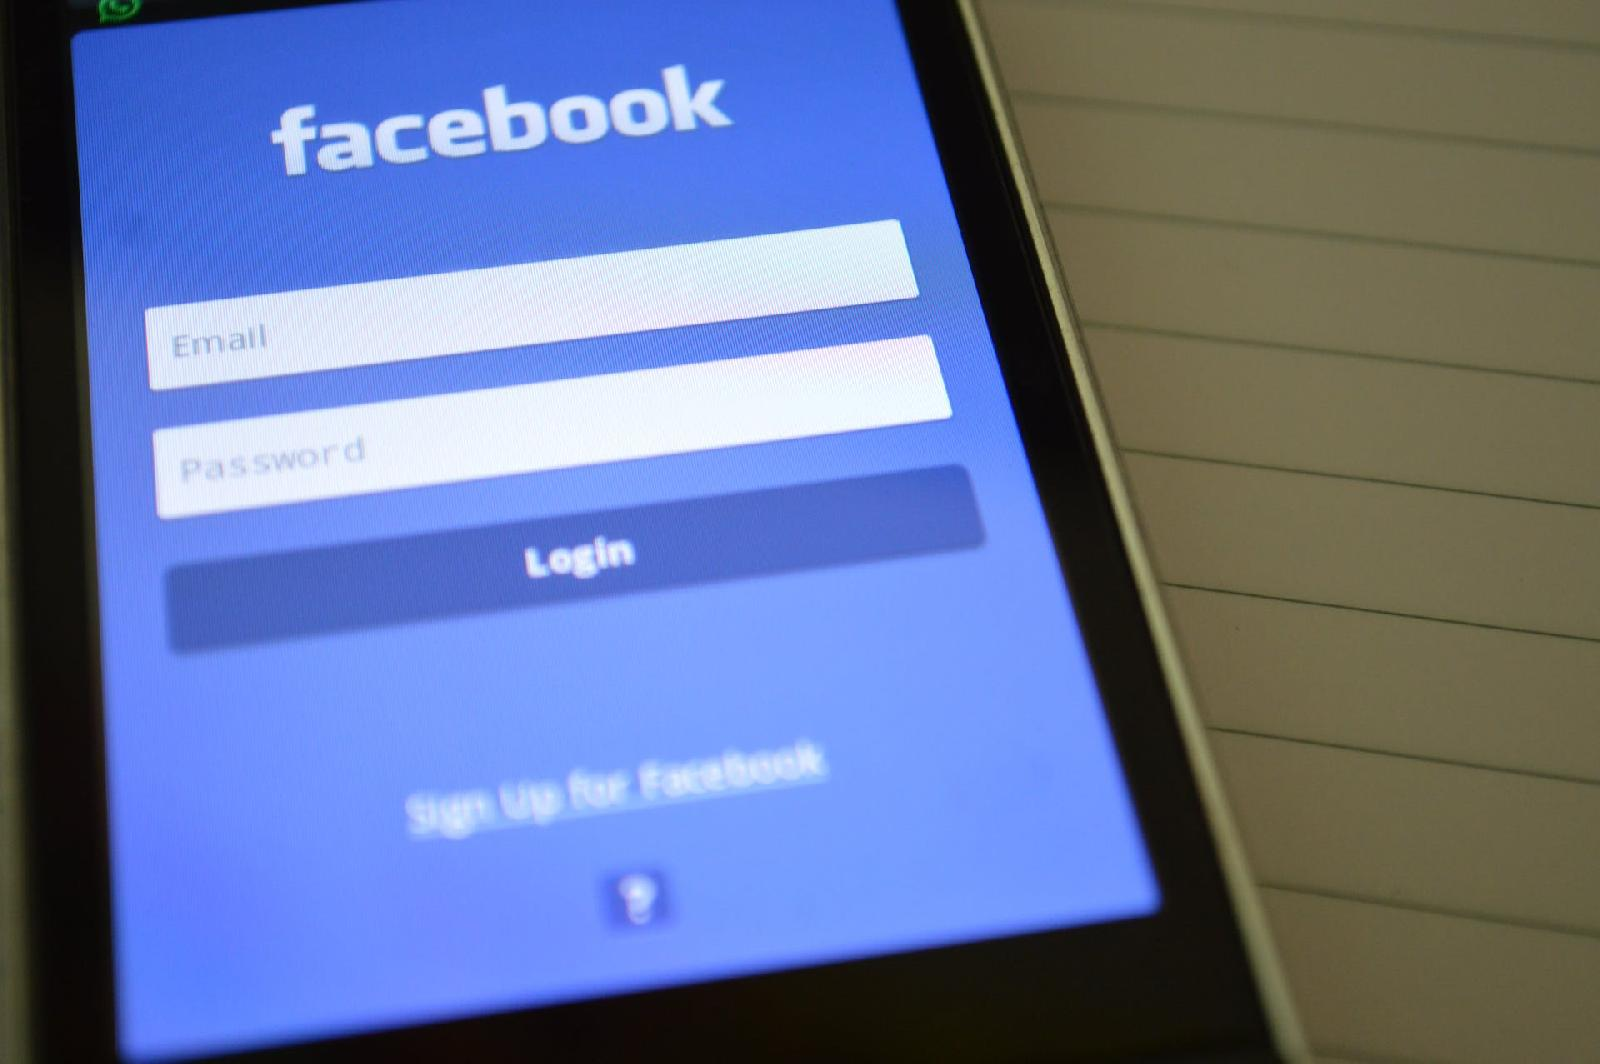 Comment desactiver ou supprimer definitivement son compte facebook ?